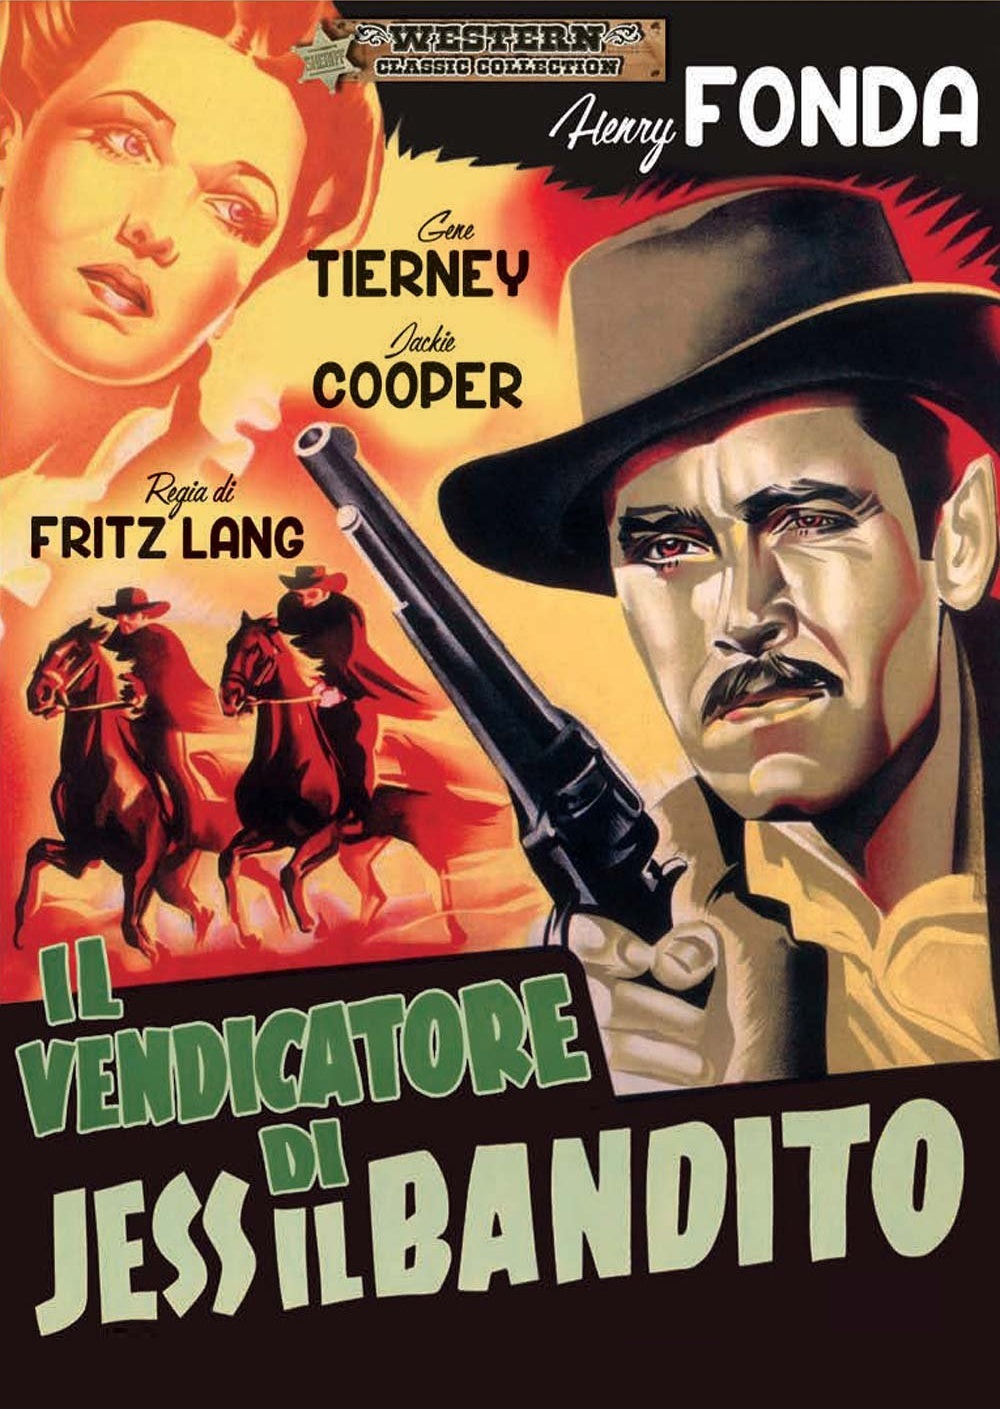 Il vendicatore di Jess il bandito [HD] (1940)